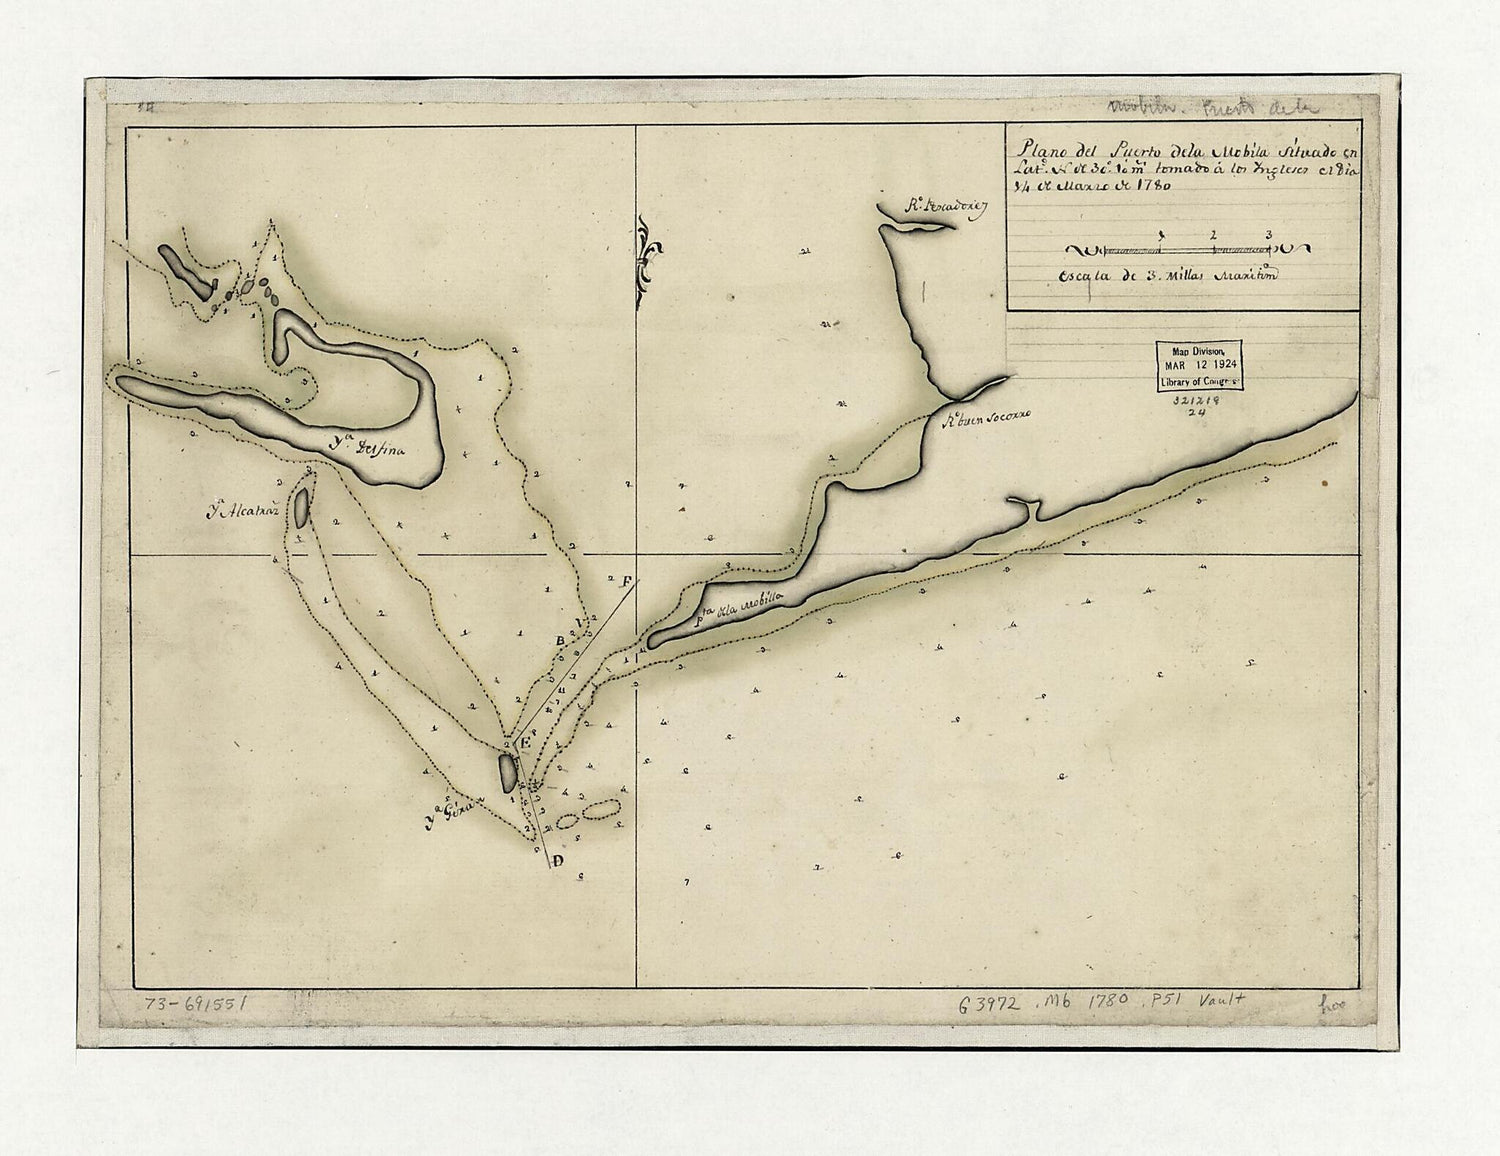 This old map of Plano Del Puerto De La Mobila Situado En Latd. No. De 30⁰ 10ʹ M. Tomado á Los Ingleses El Dia 14 De Marzo De from 1780 was created by  in 1780